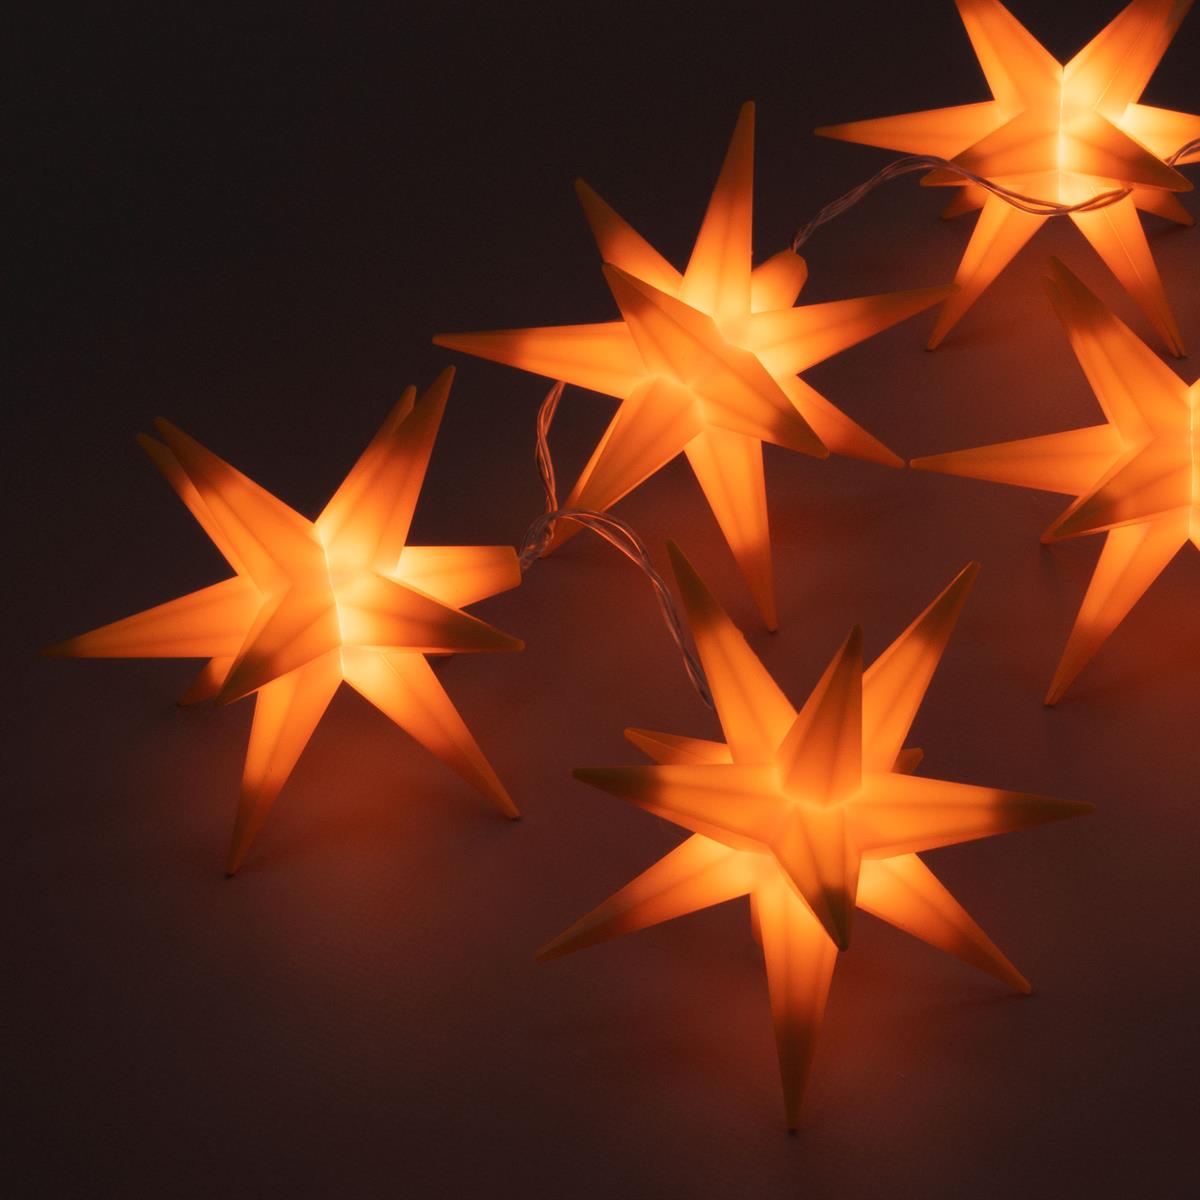 10 orange Weihnachts-Sterne Timer Trafo Weihnachts-Deko LED Lichterkette